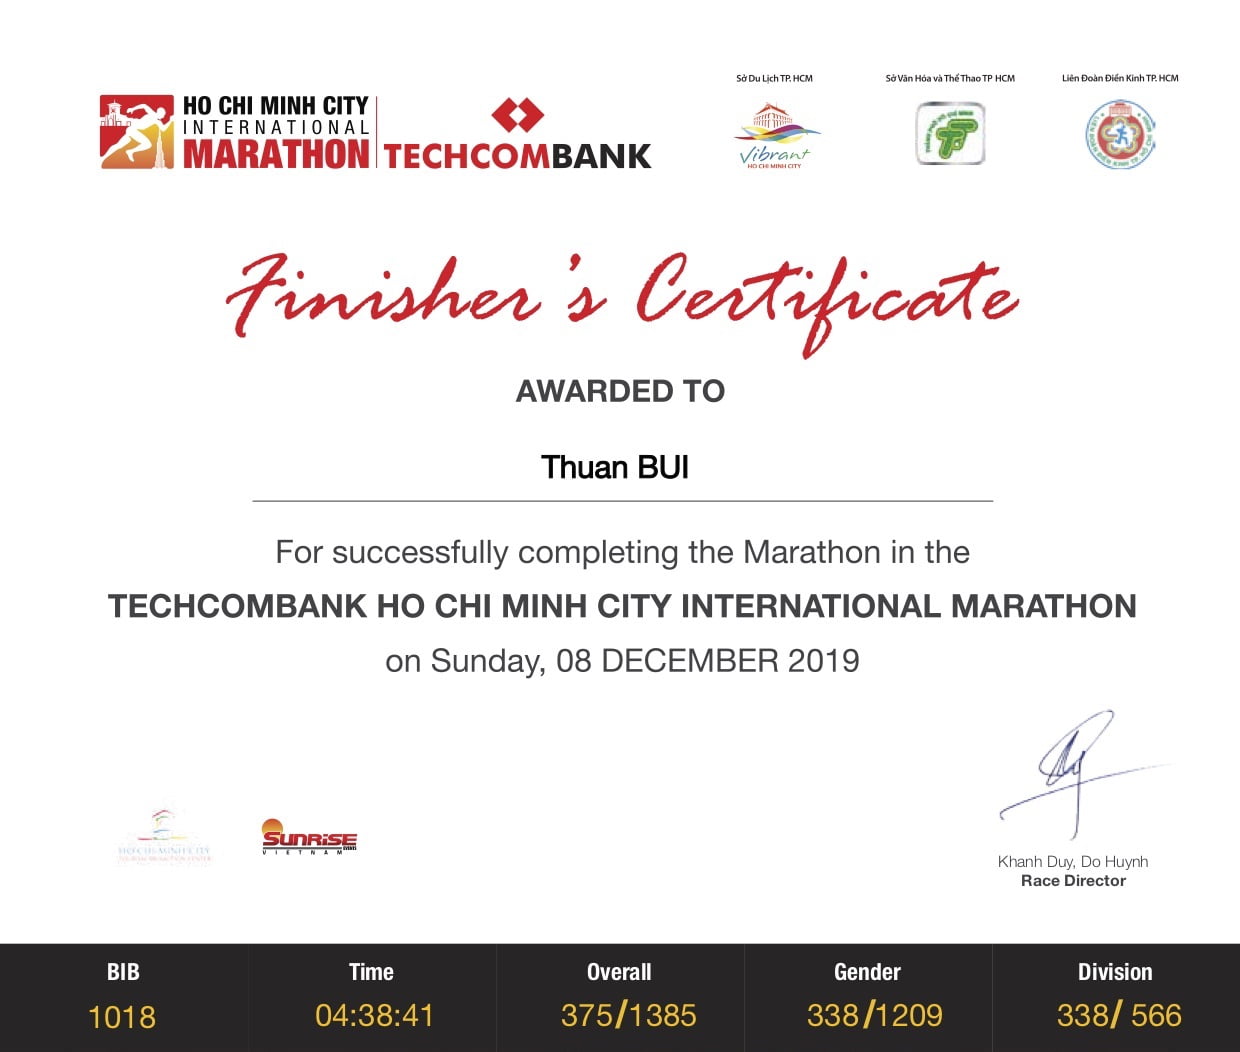 Kí sự HCMC International Marathon 2019 - Lần 2 chinh phục Full Marathon trên đường nhựa - hcmc marathon techcombank 2019